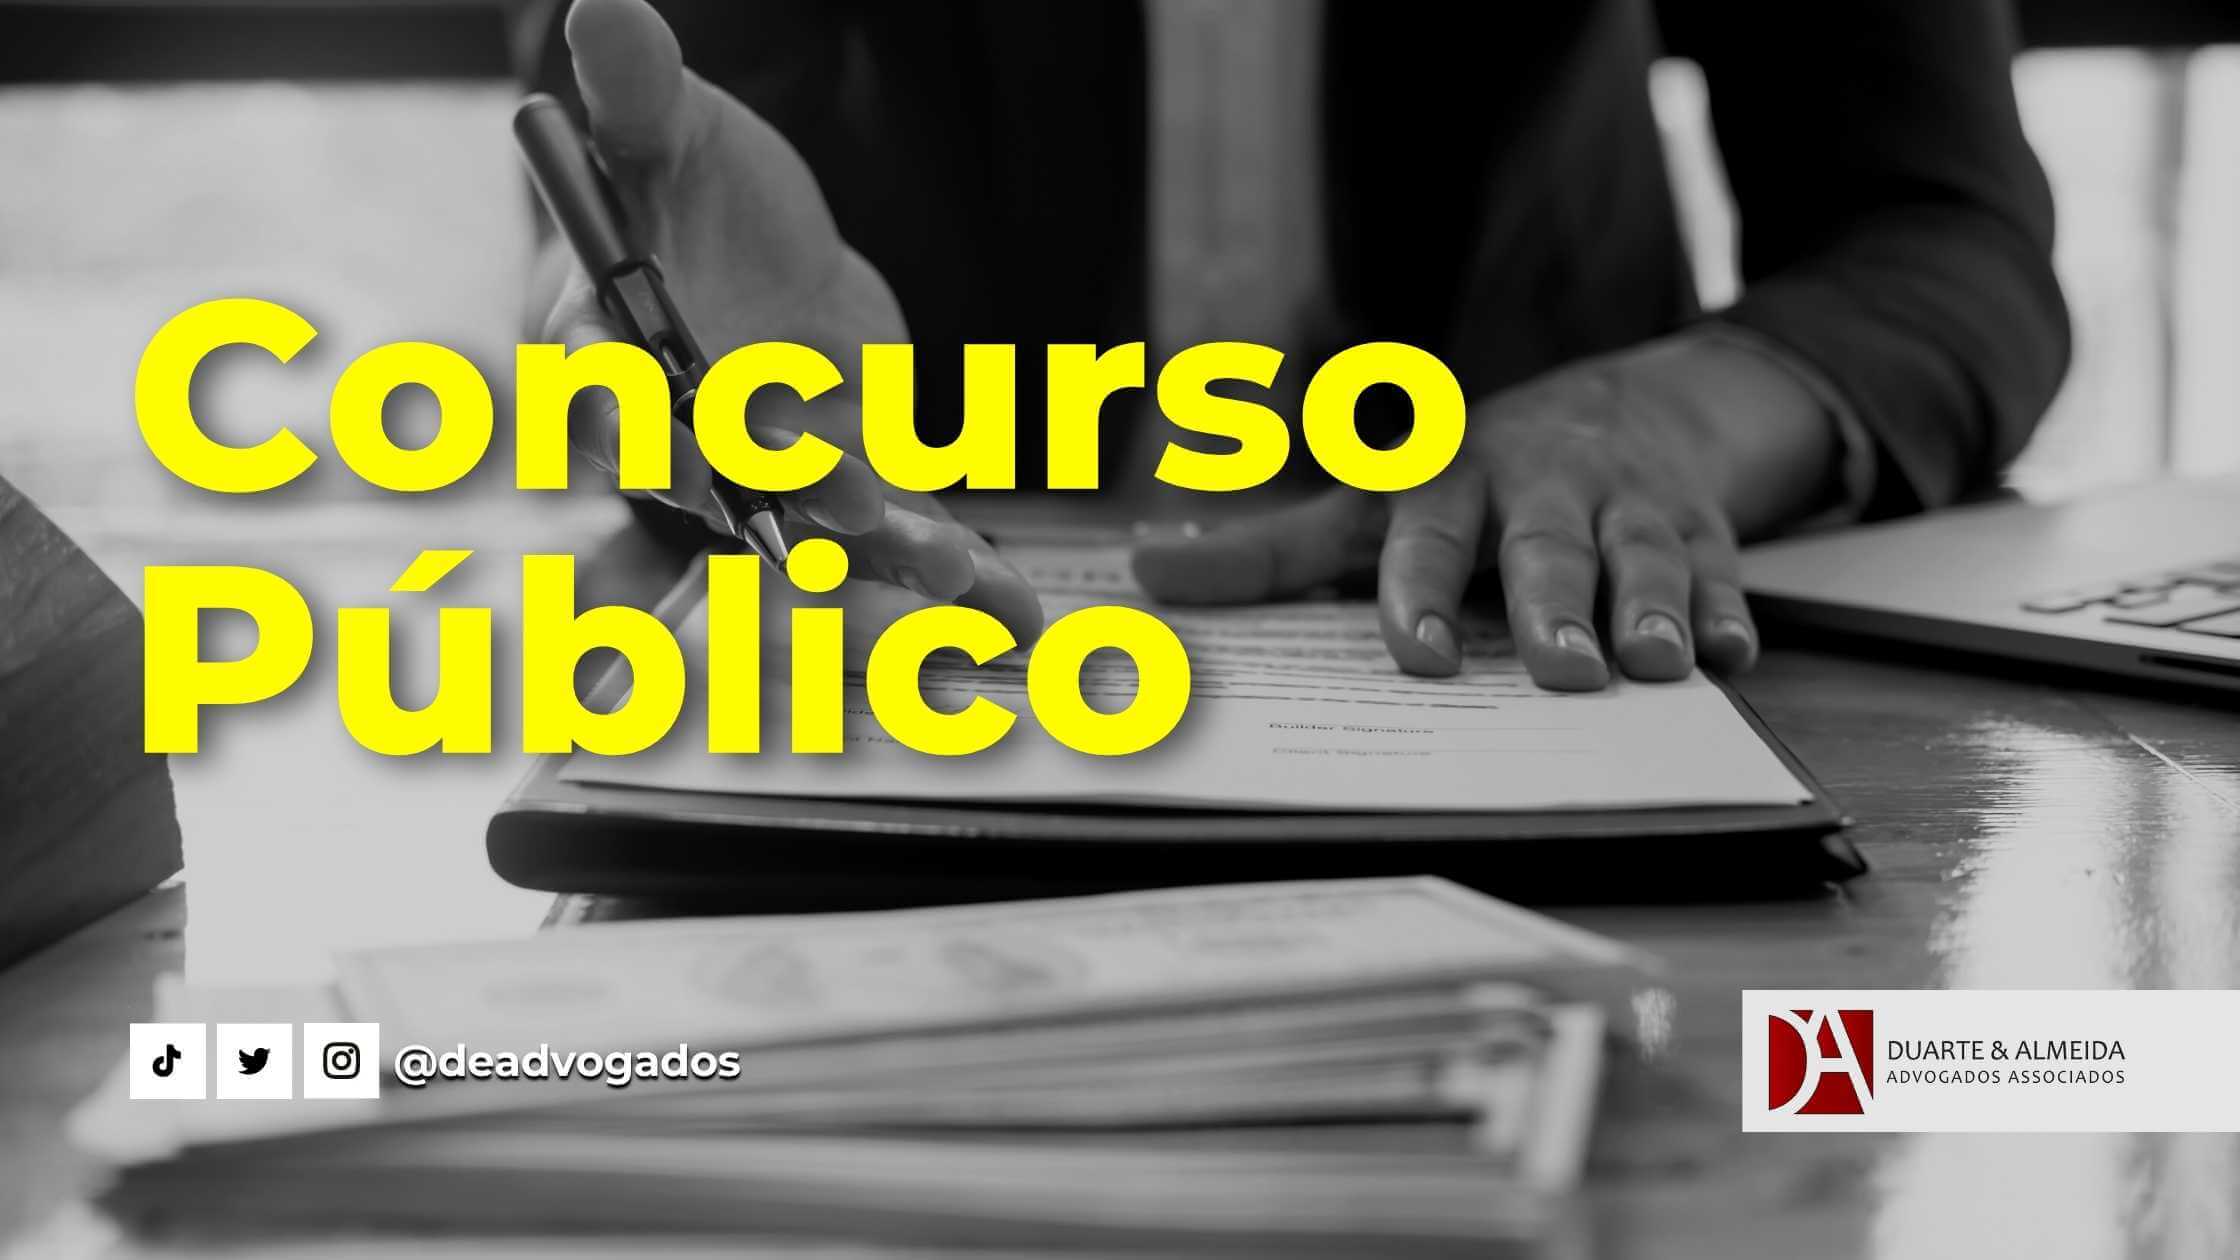 Duarte e Almeida Advogados - Por que contratar um Advogado Especialista em Concurso Público? - advogado especialista em concurso público